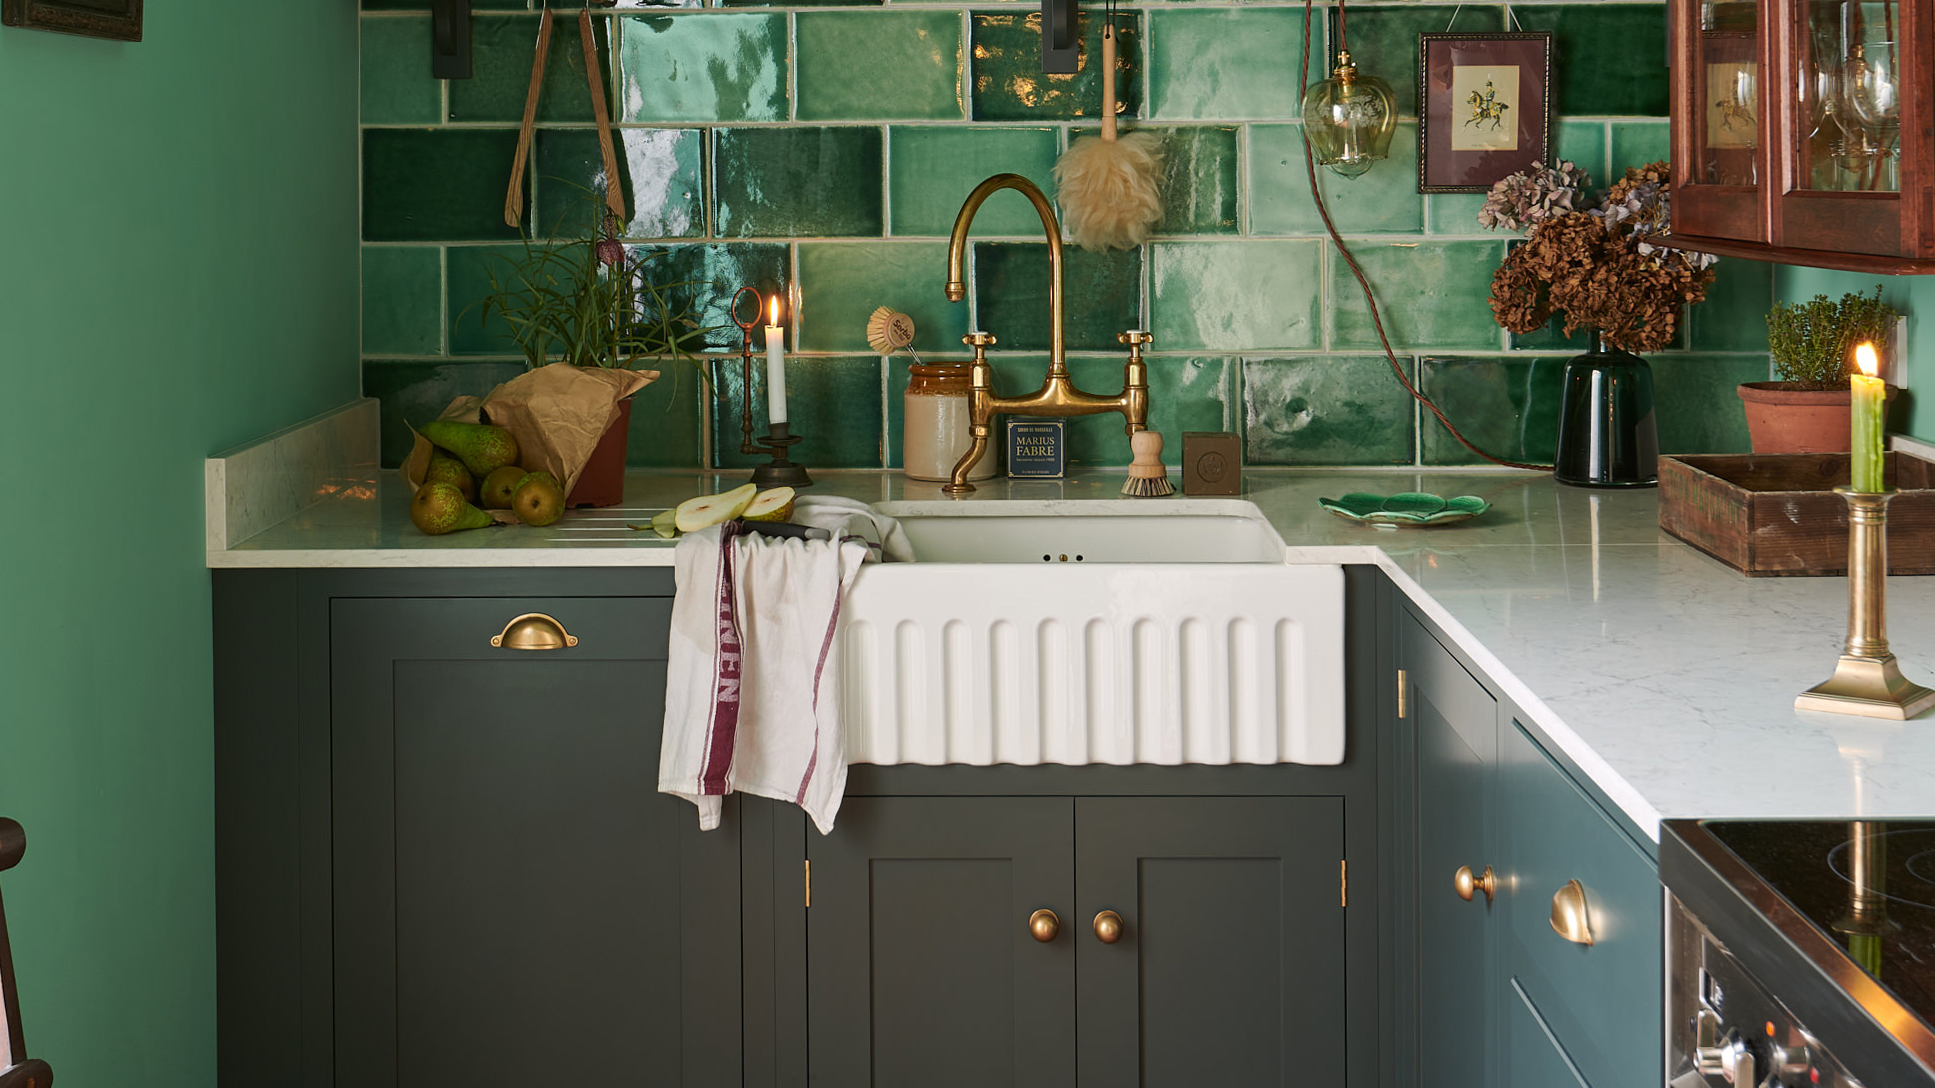 british kitchen sink realism movement